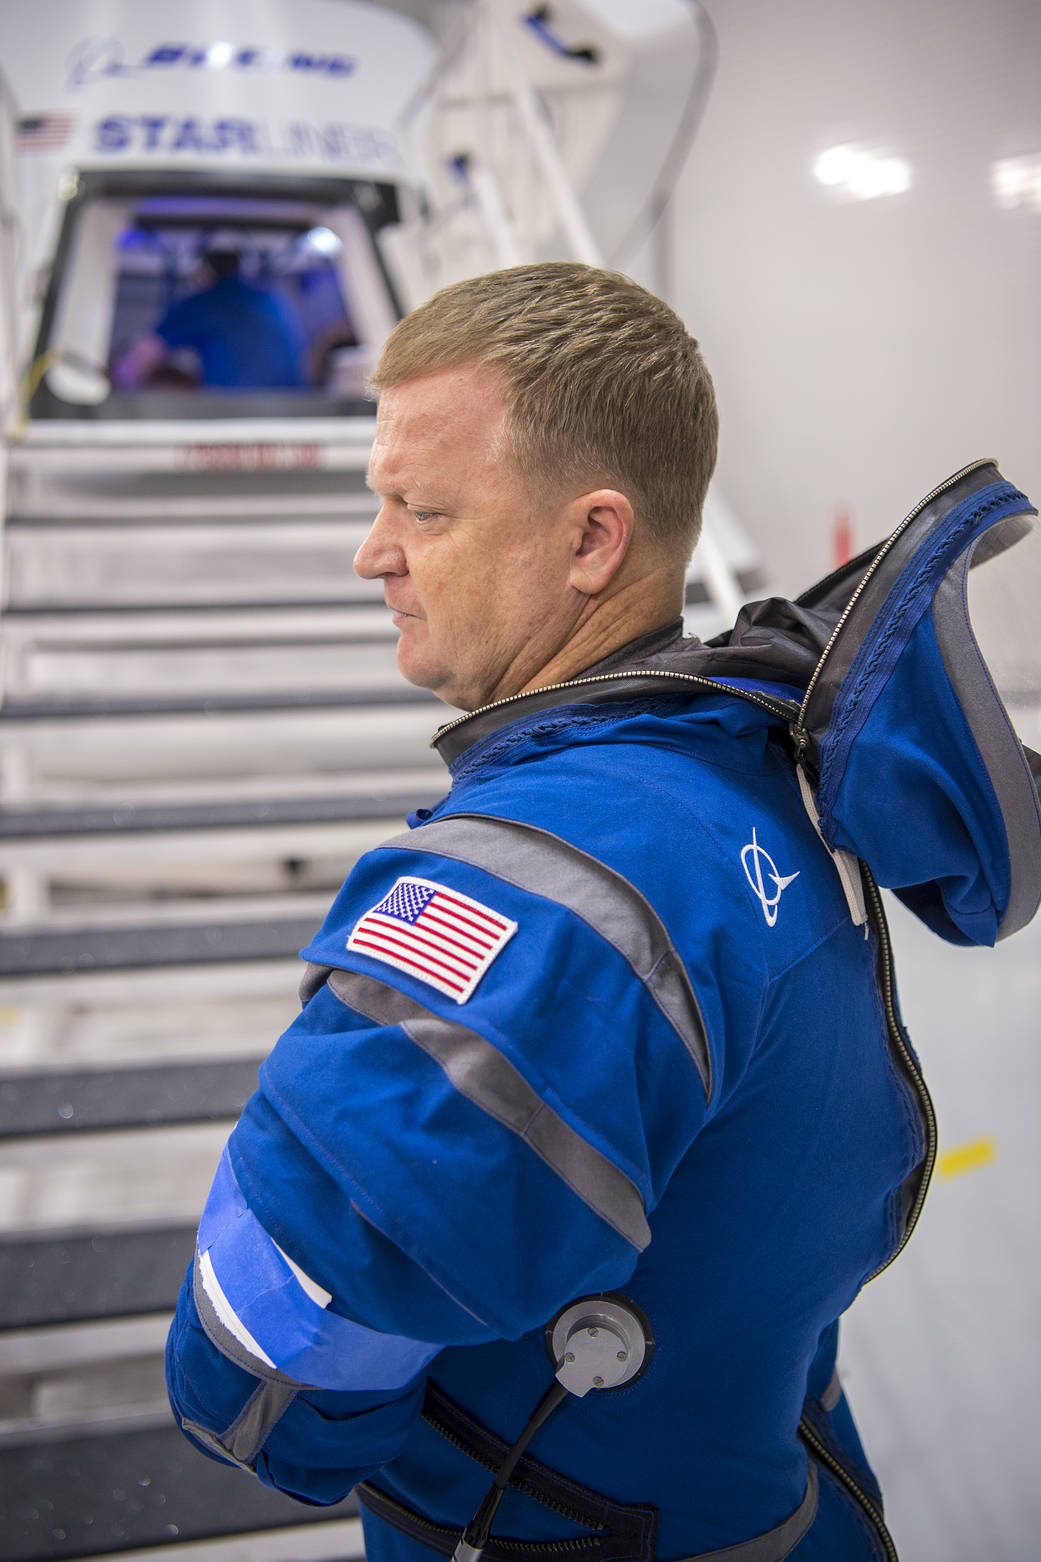 Eric Boe in Boeing Spacesuit